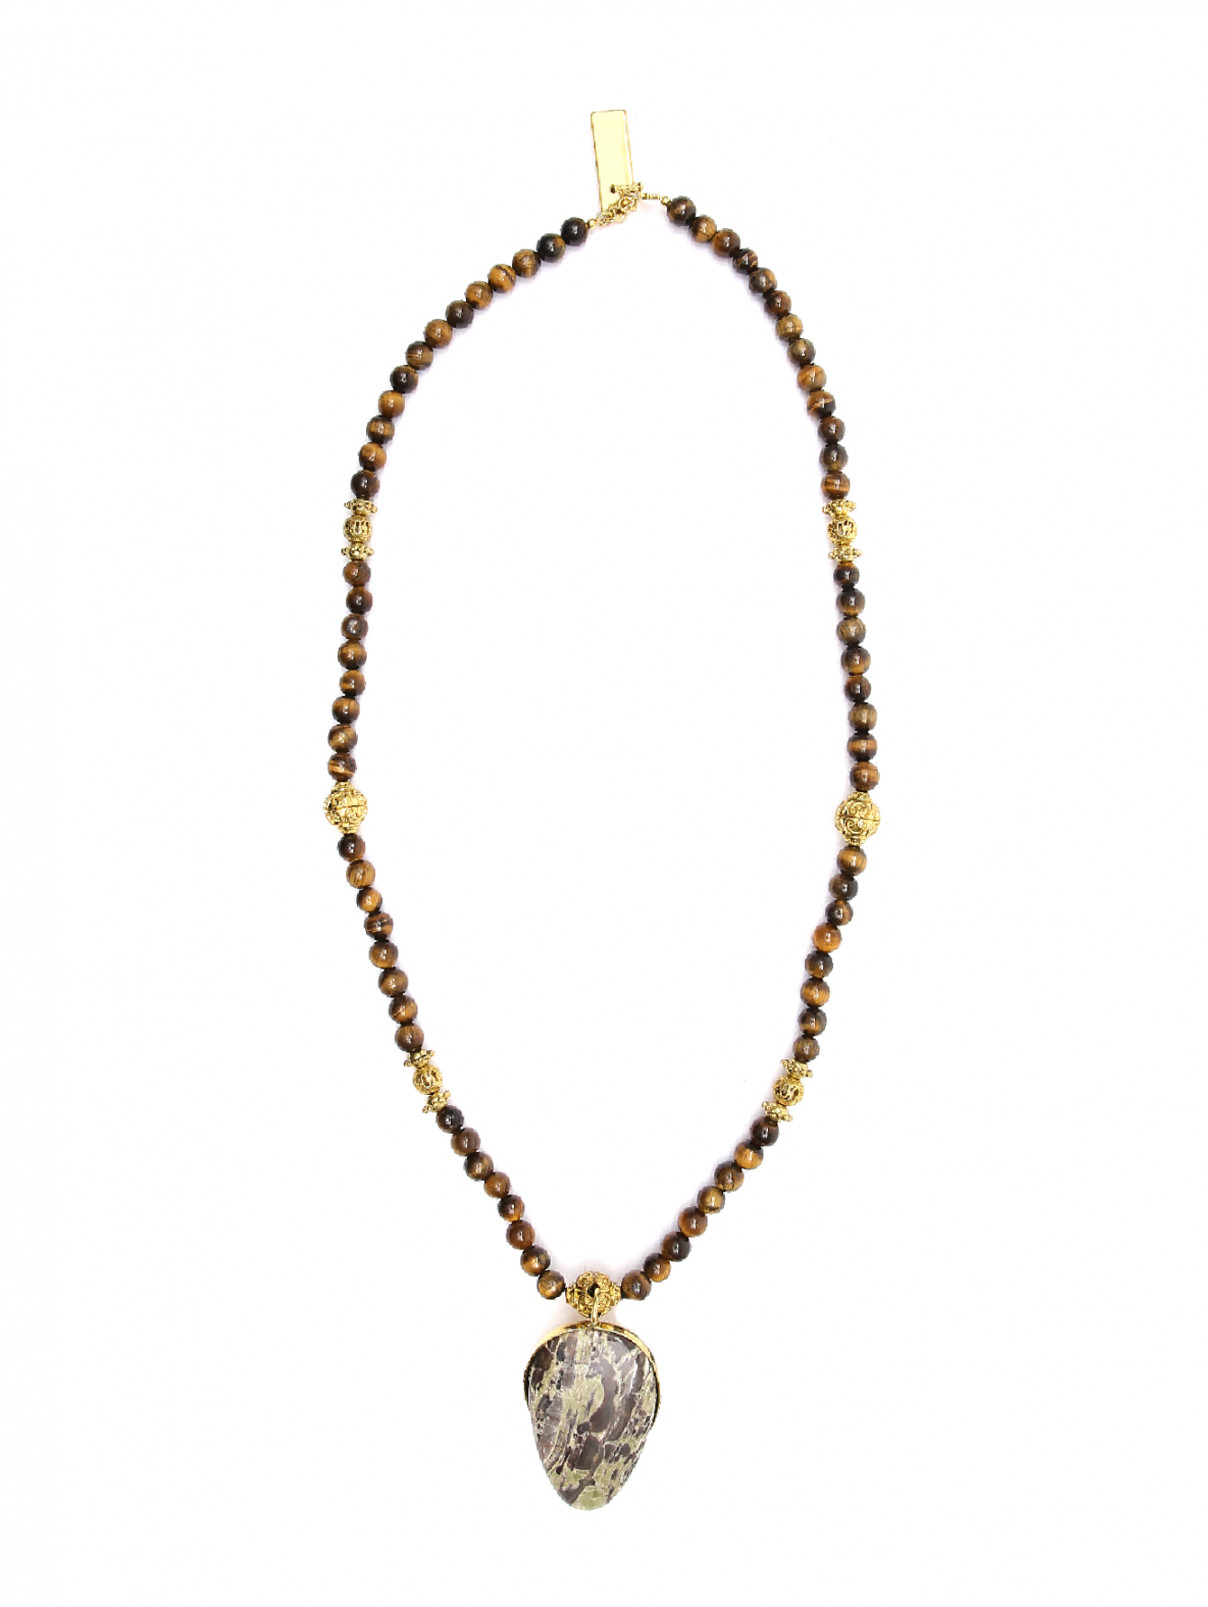 Ожерелье из камней и металла Weekend Max Mara  –  Общий вид  – Цвет:  Коричневый